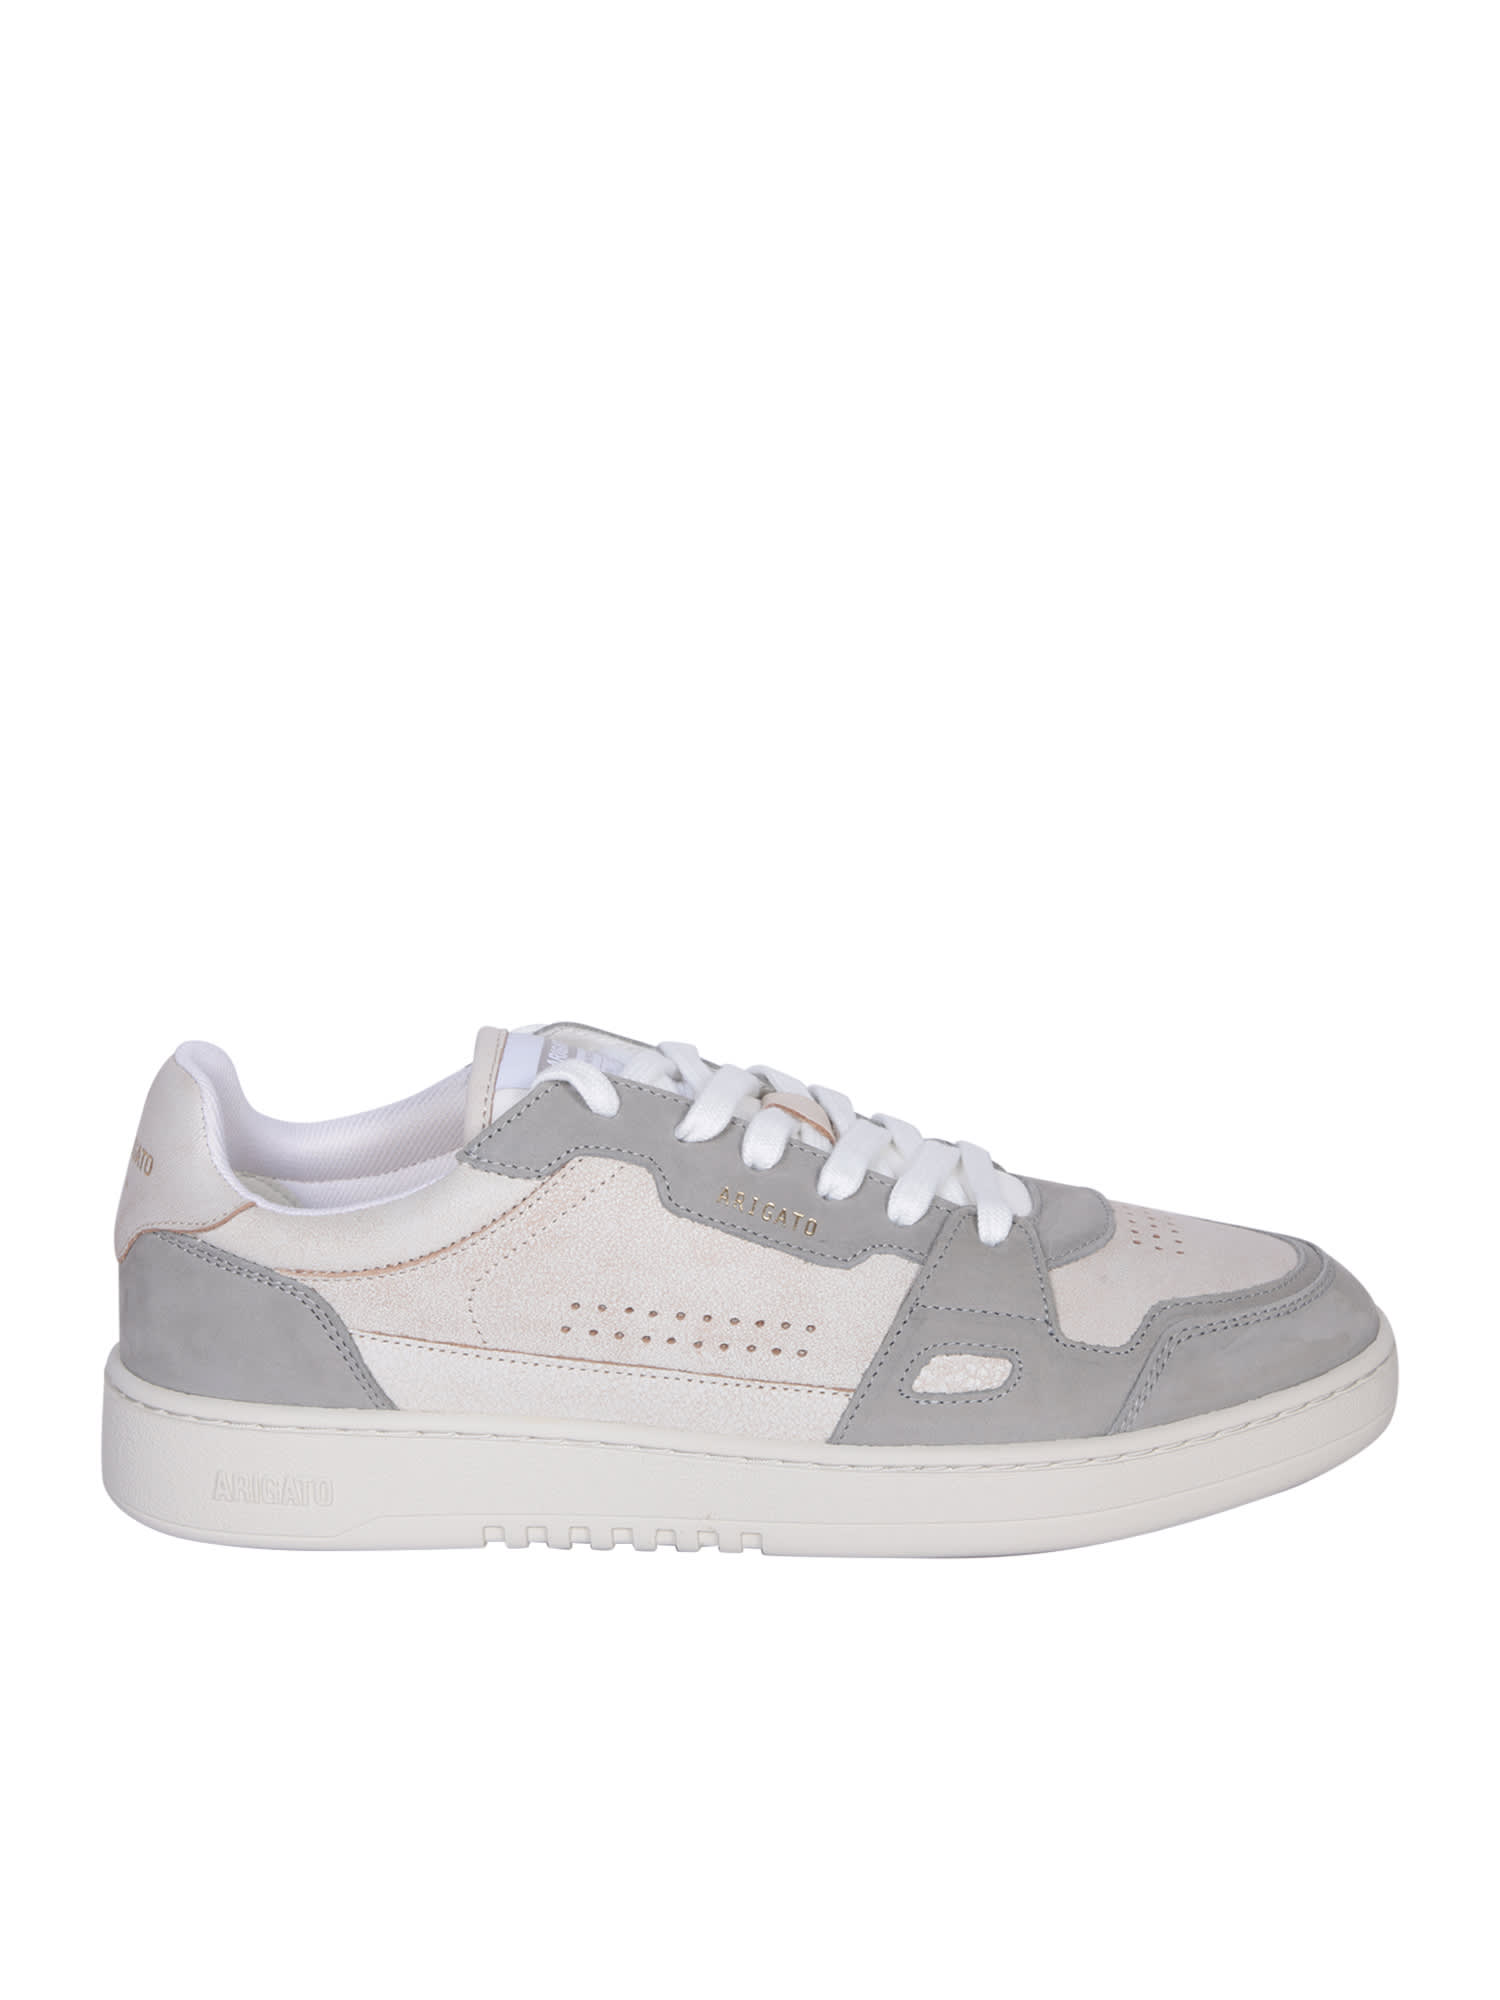 Dice Lo Beige/grey Sneakers